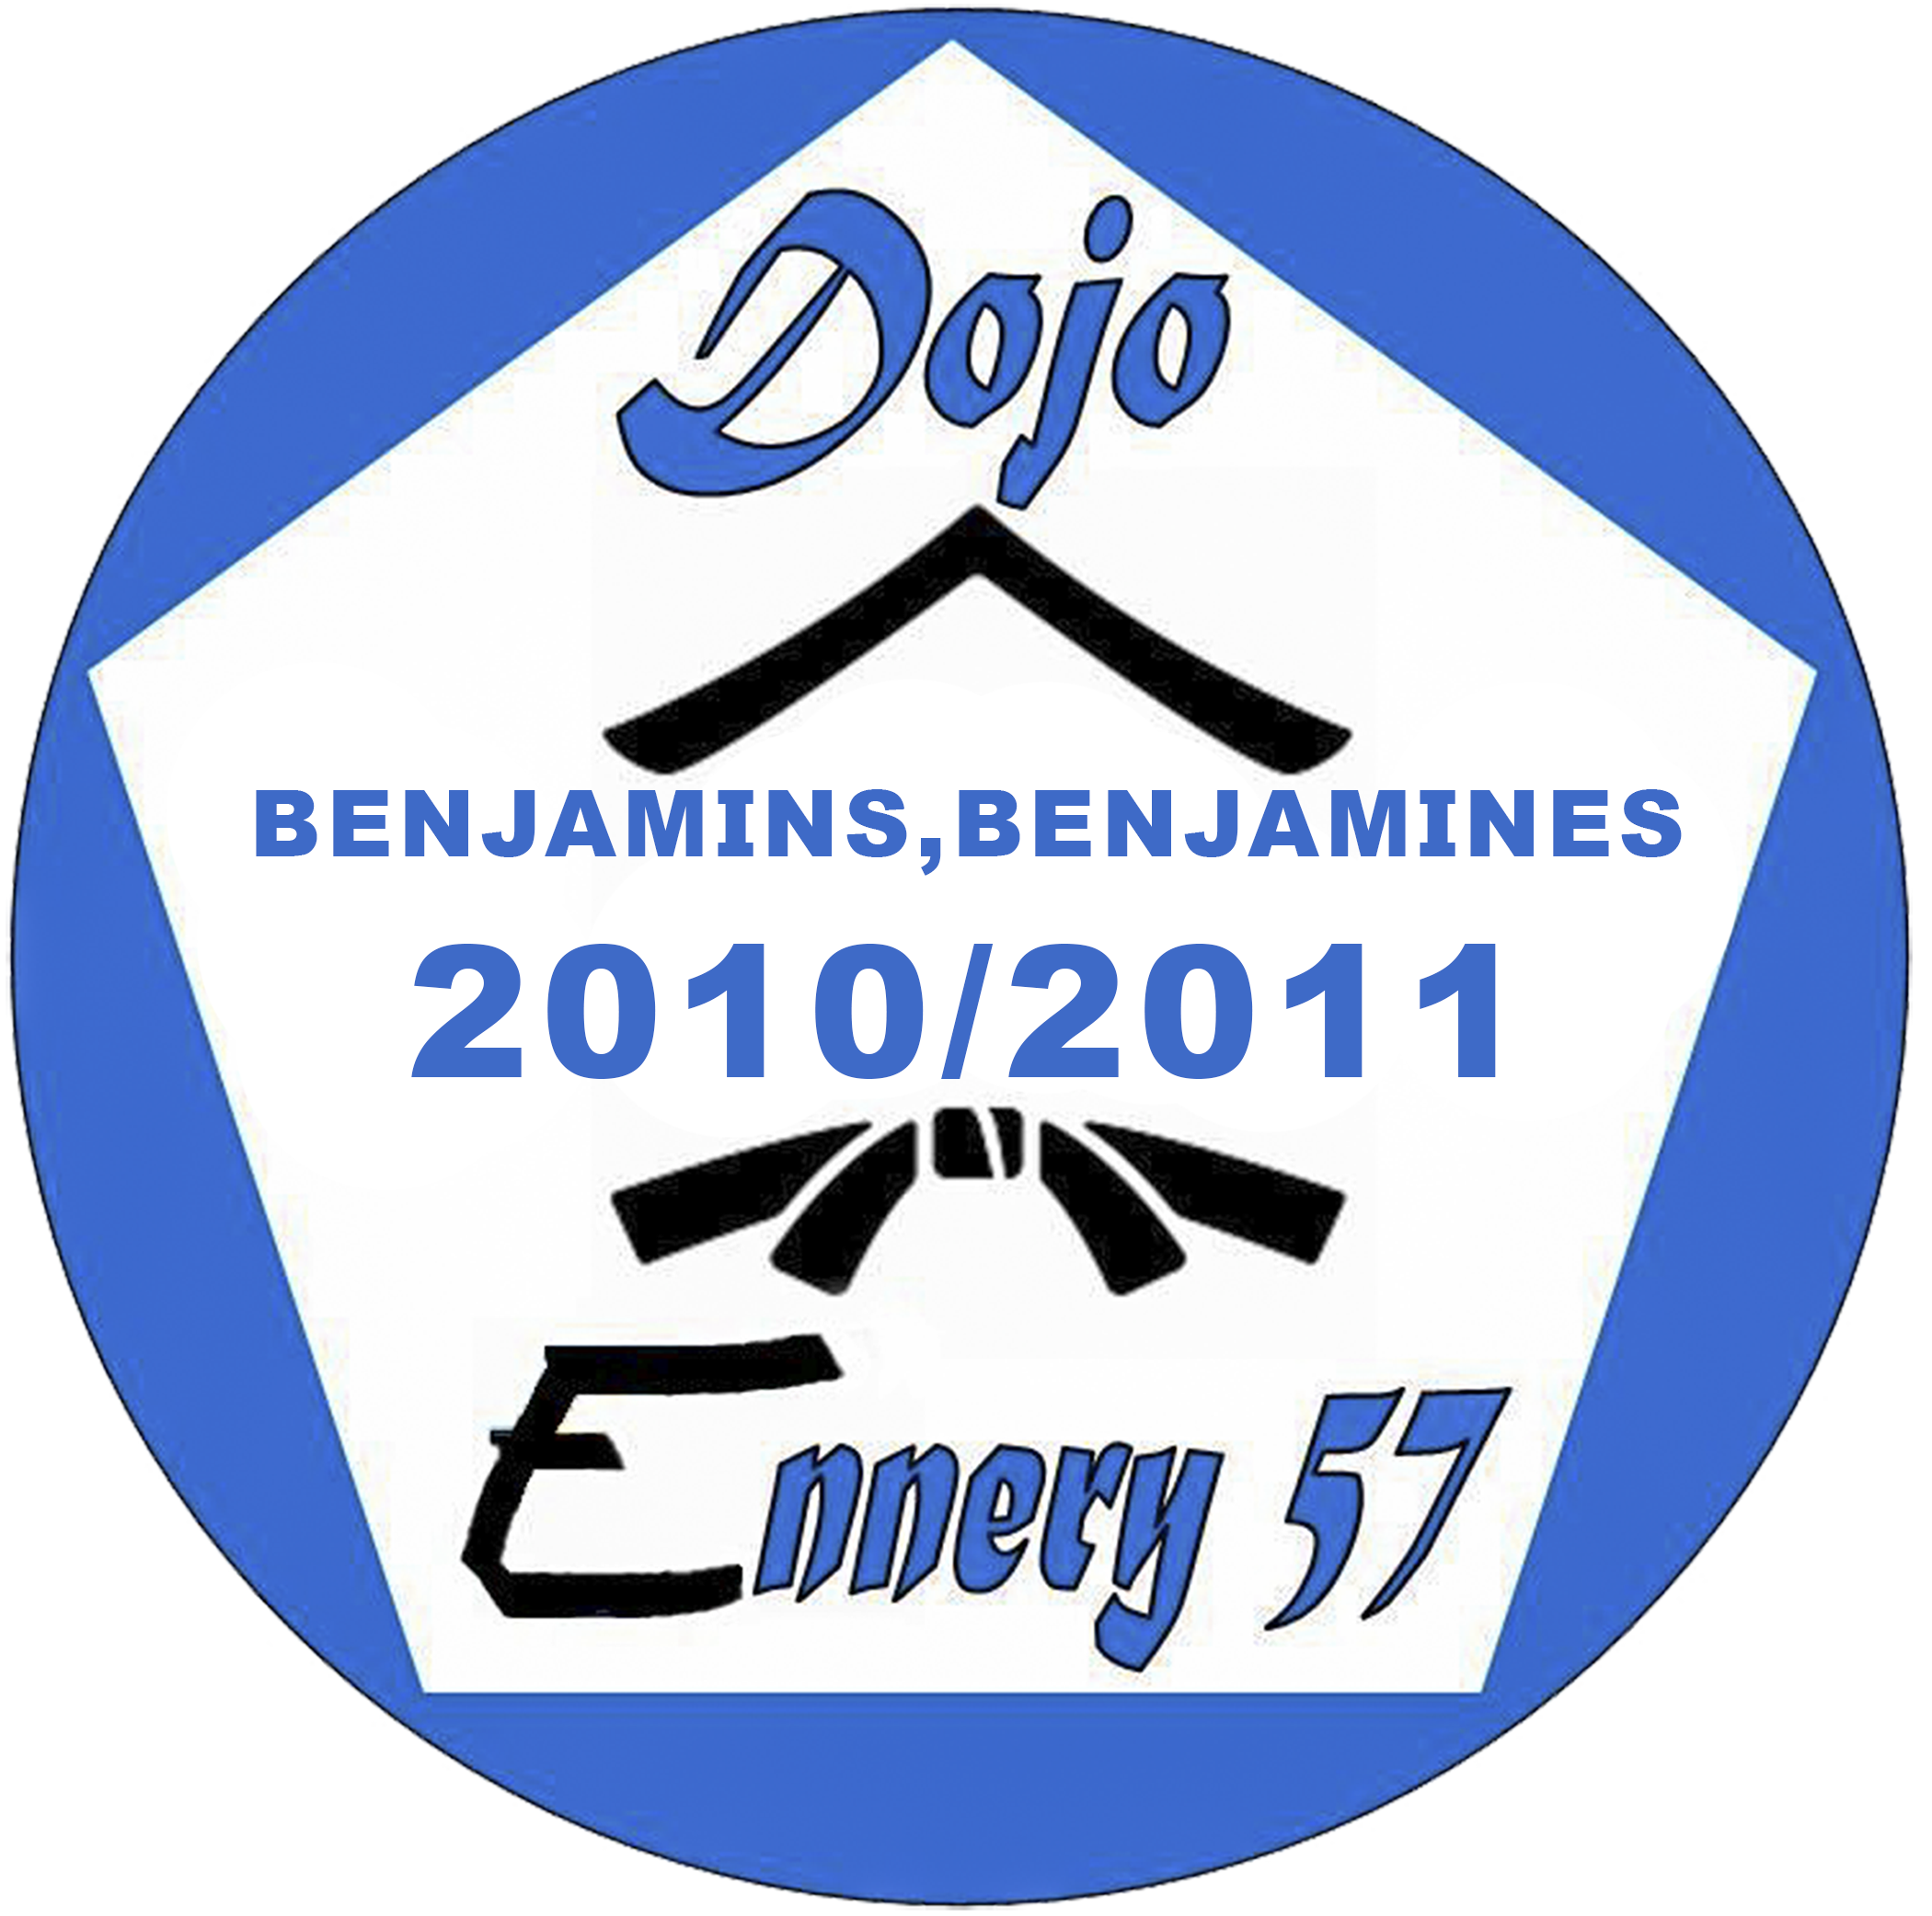 logo benjamins Dojo Ennery 57